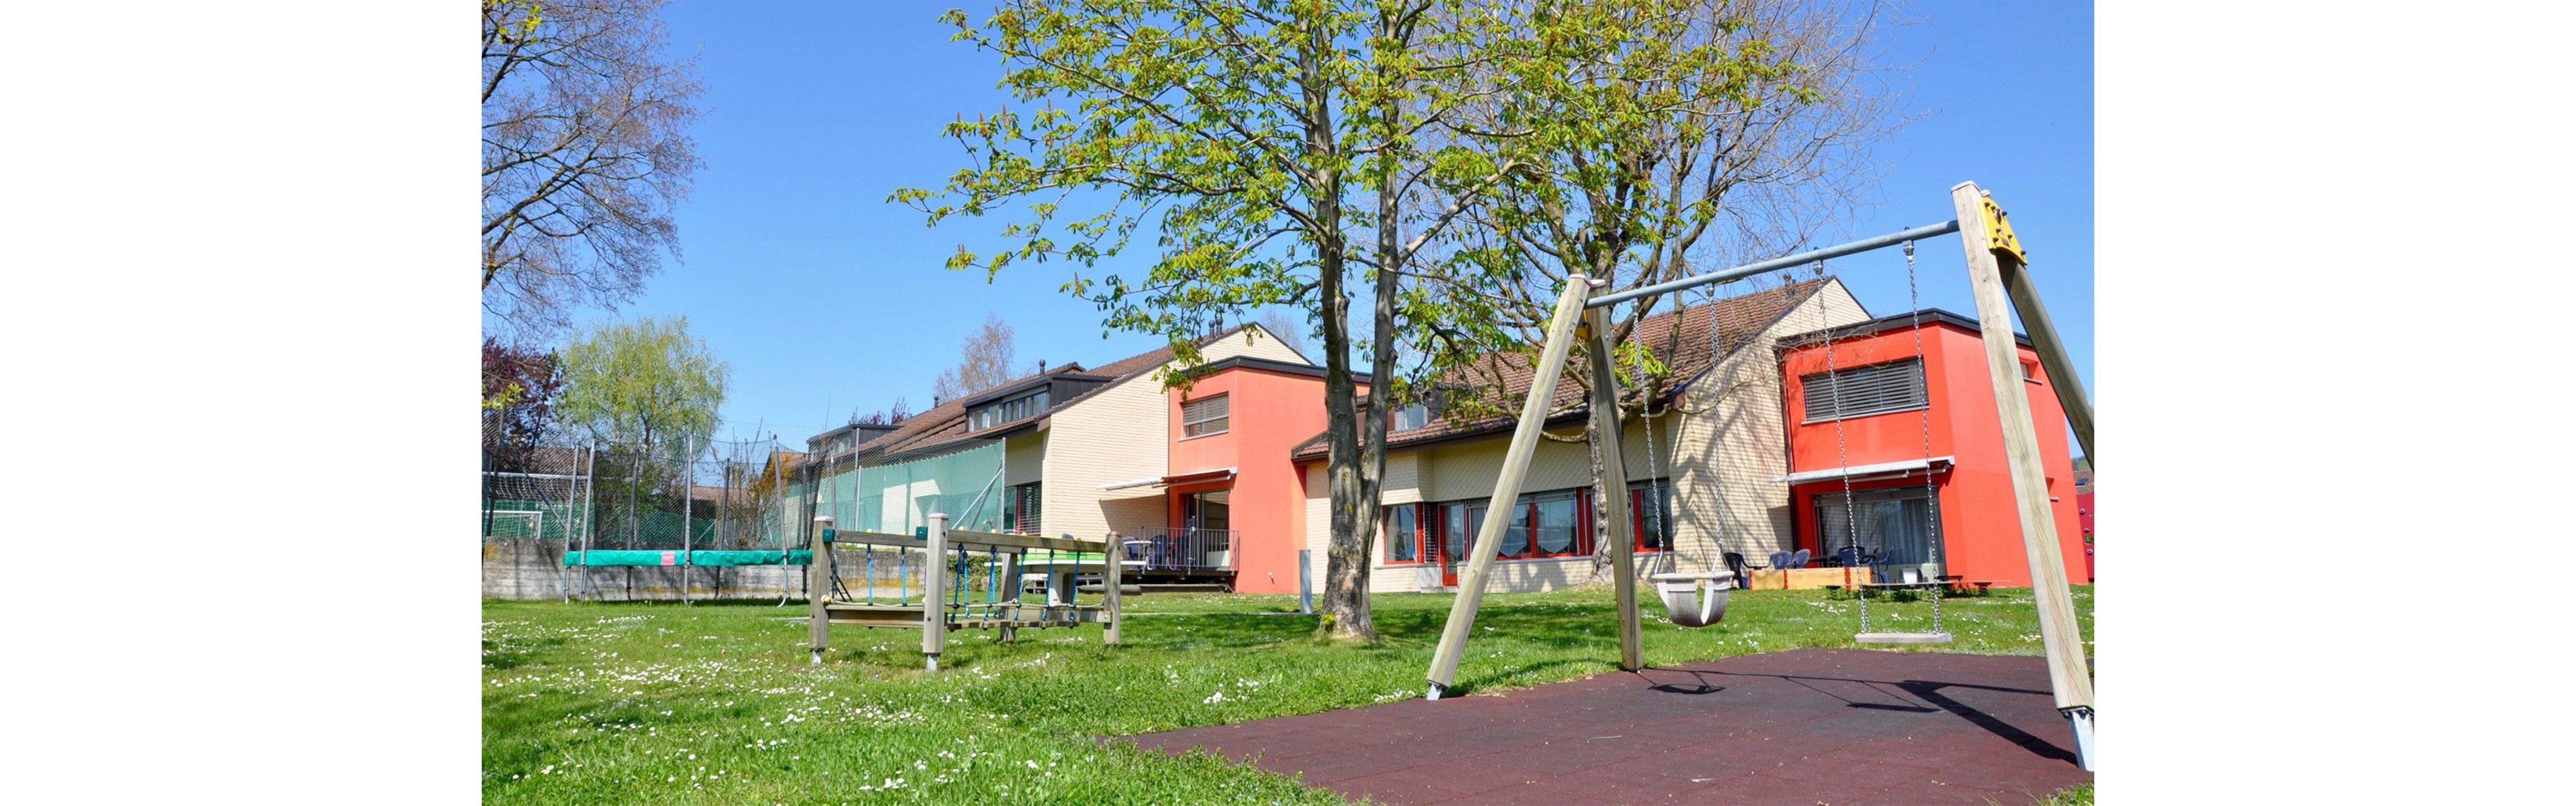 Kinderheim Sonnhalde_Heilsarmee_Spielplatz_Aussenansicht